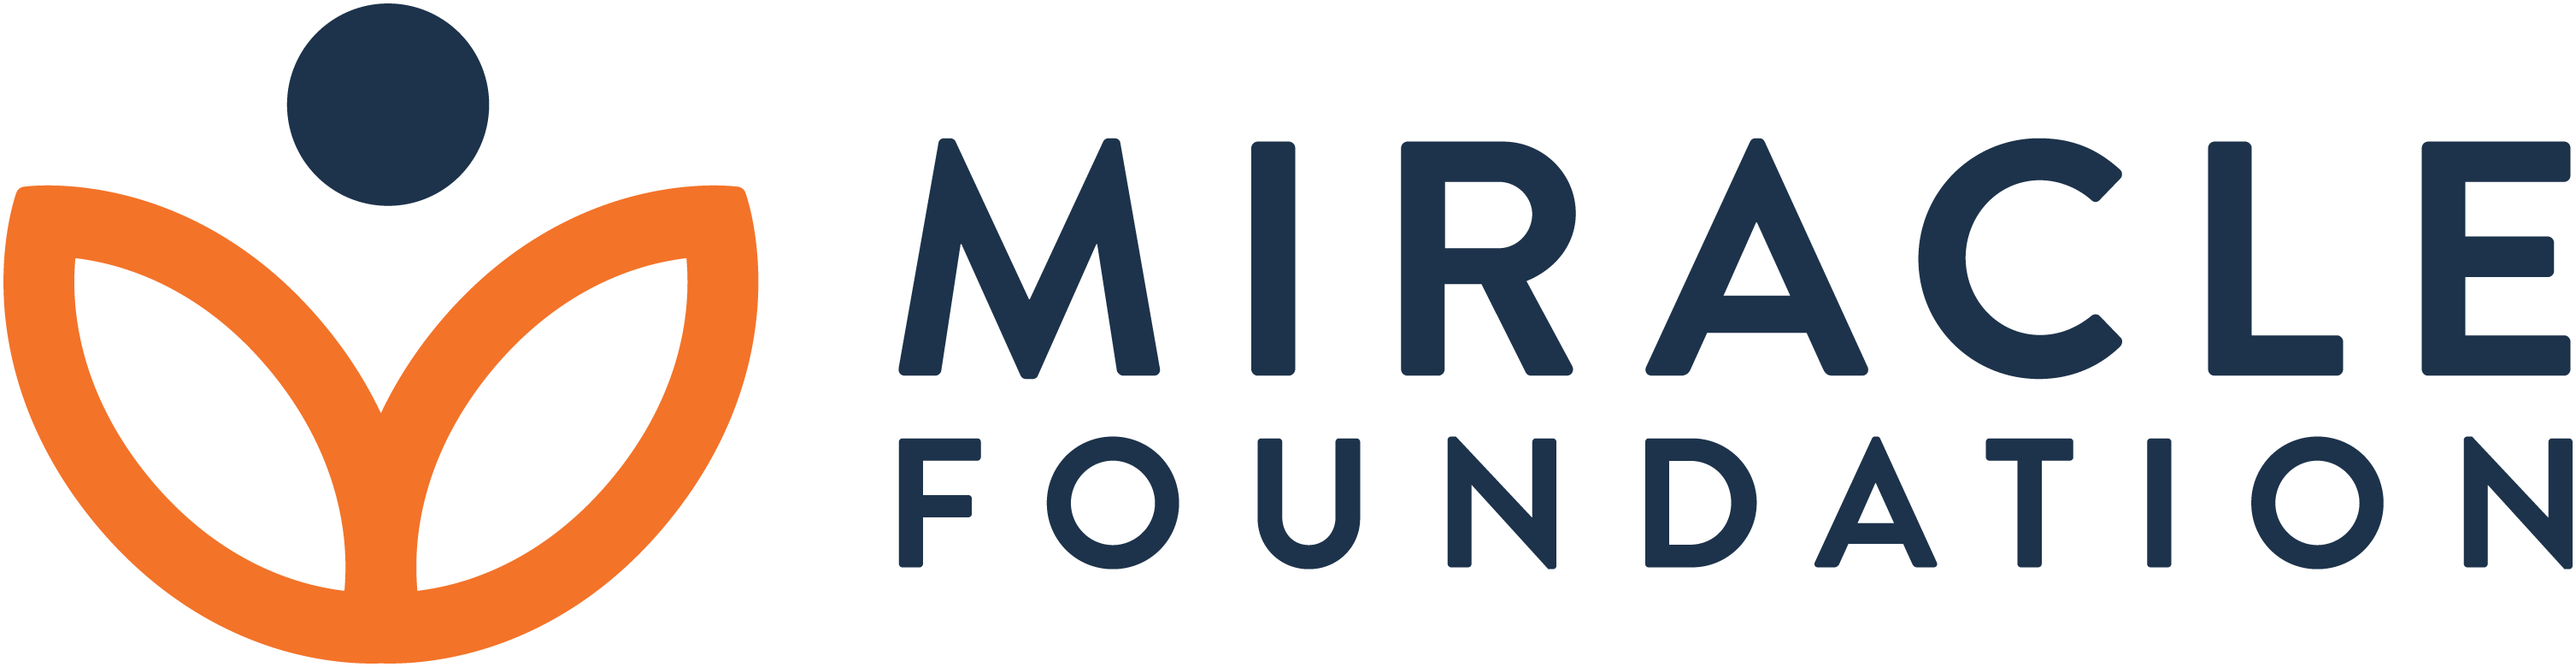 Miracle Foundation logo